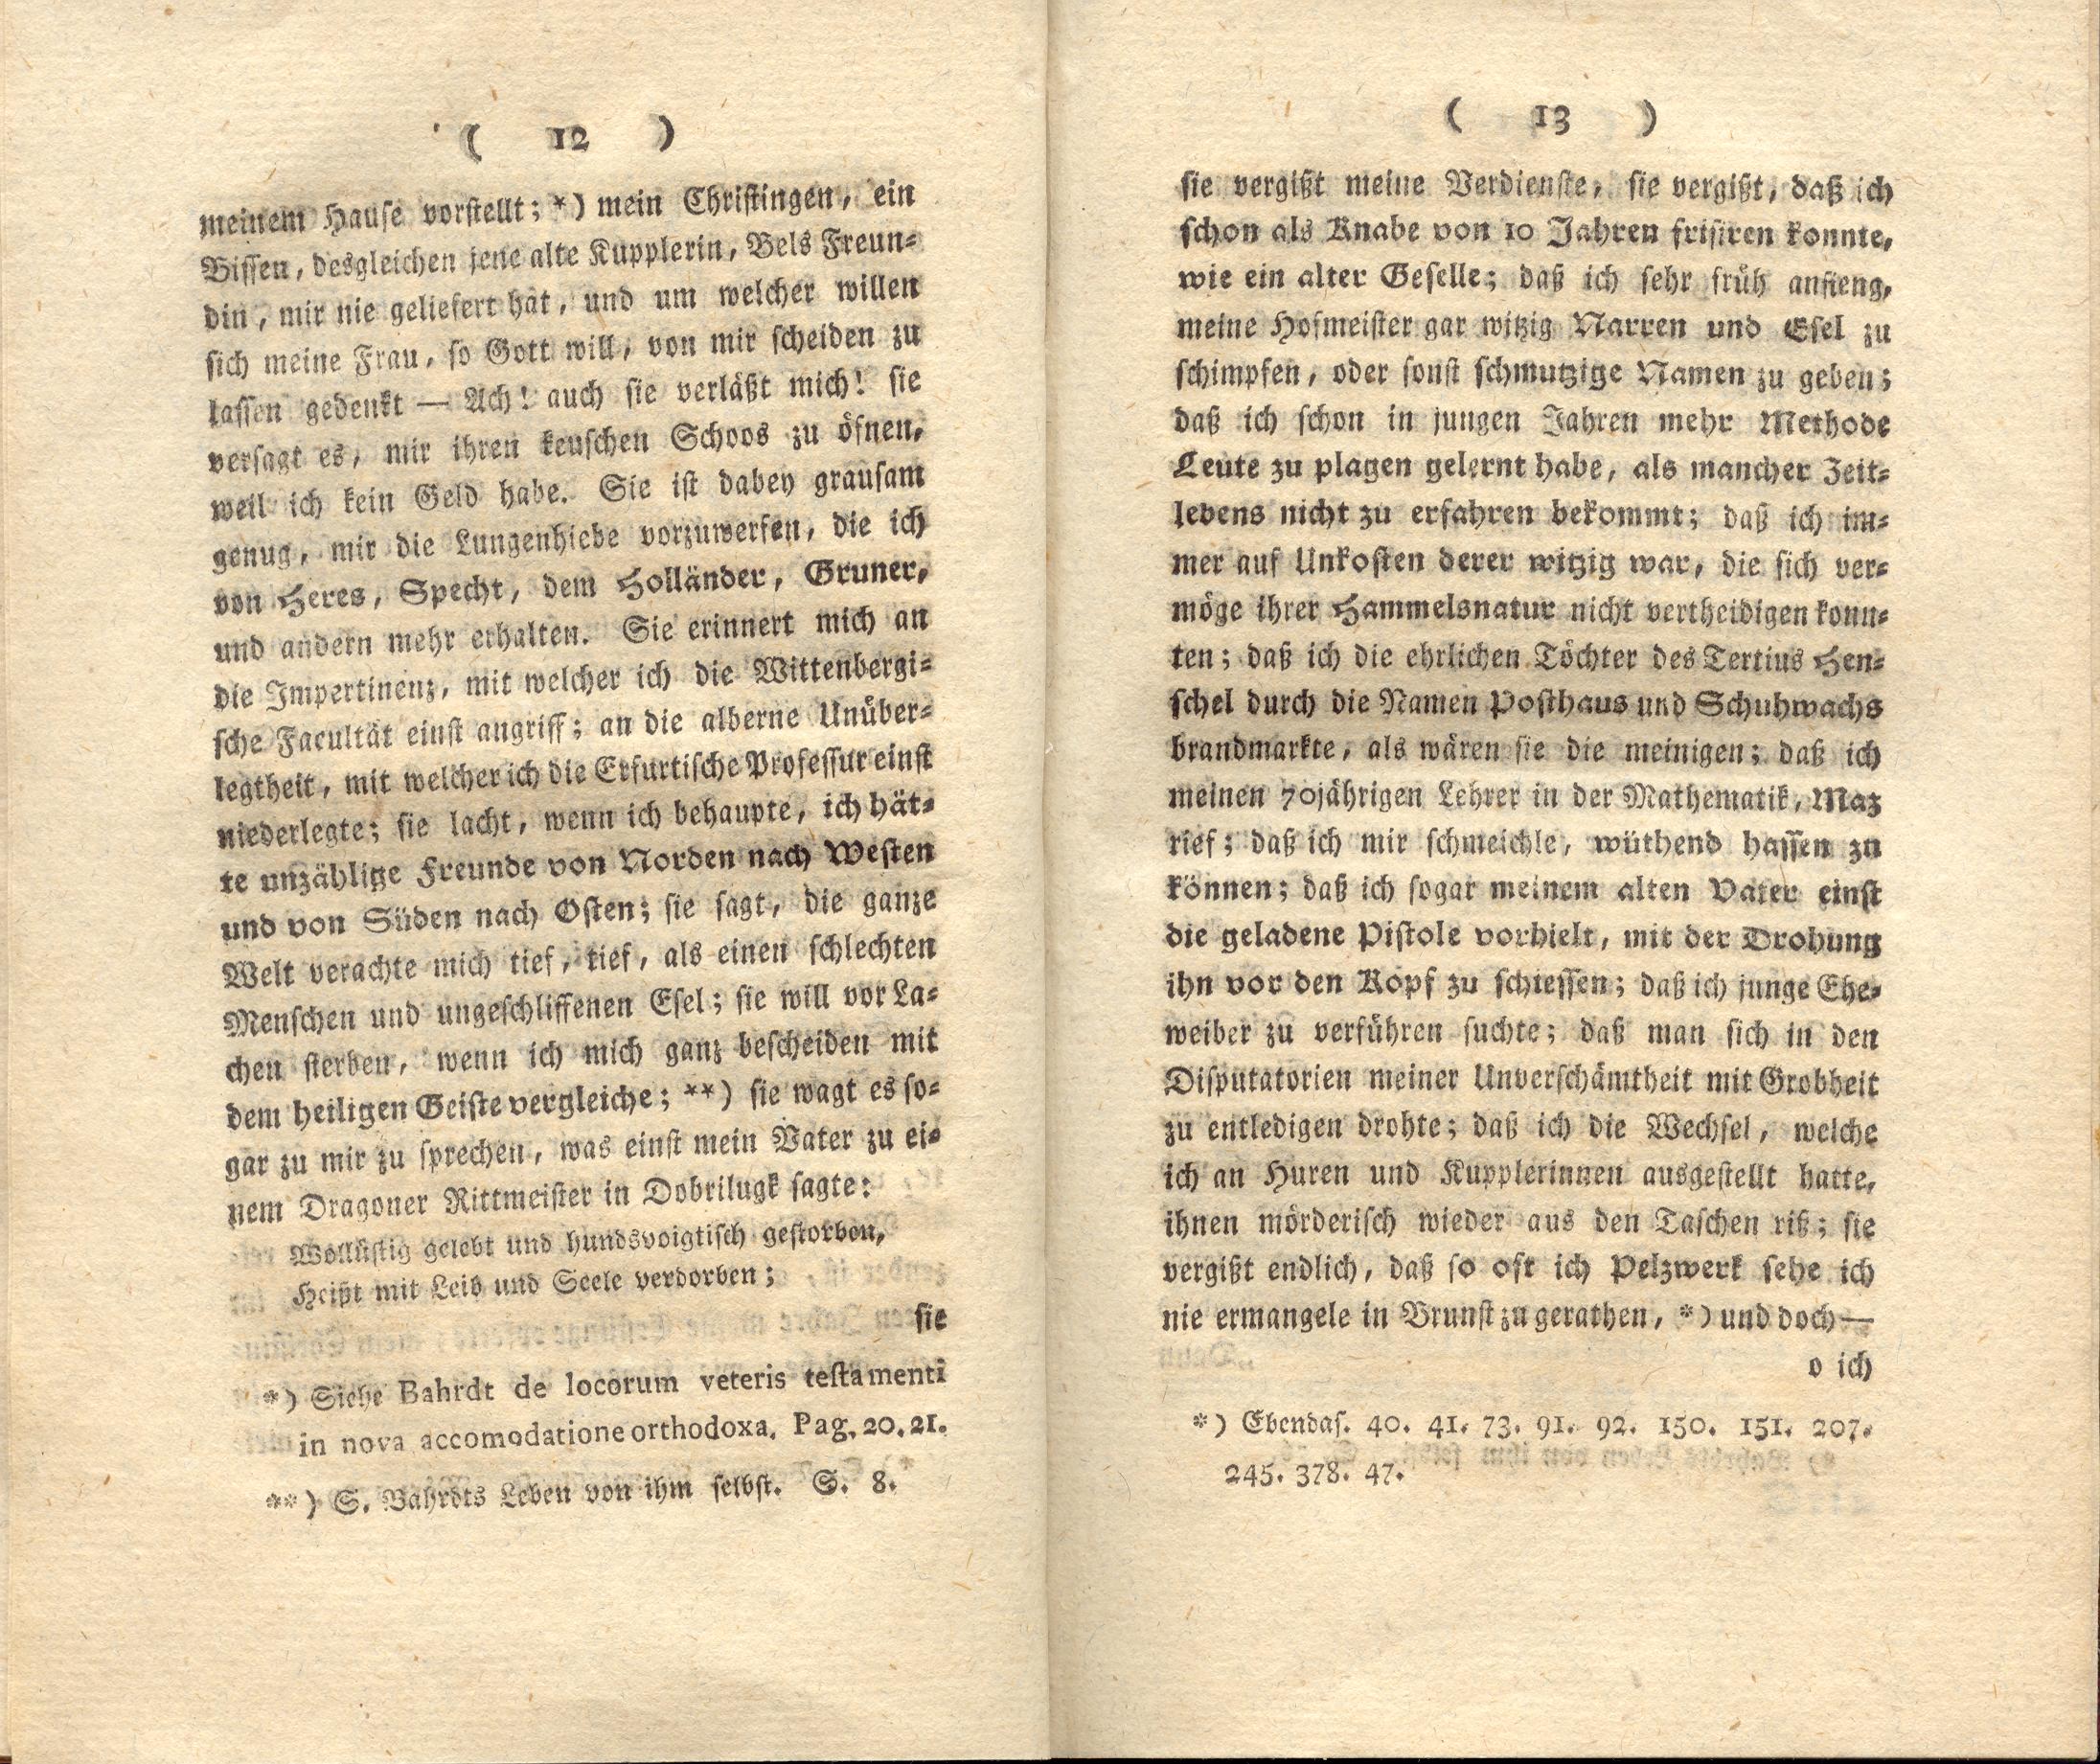 Doctor Bahrdt mit der eisernen Stirn (1790) | 8. (12-13) Main body of text